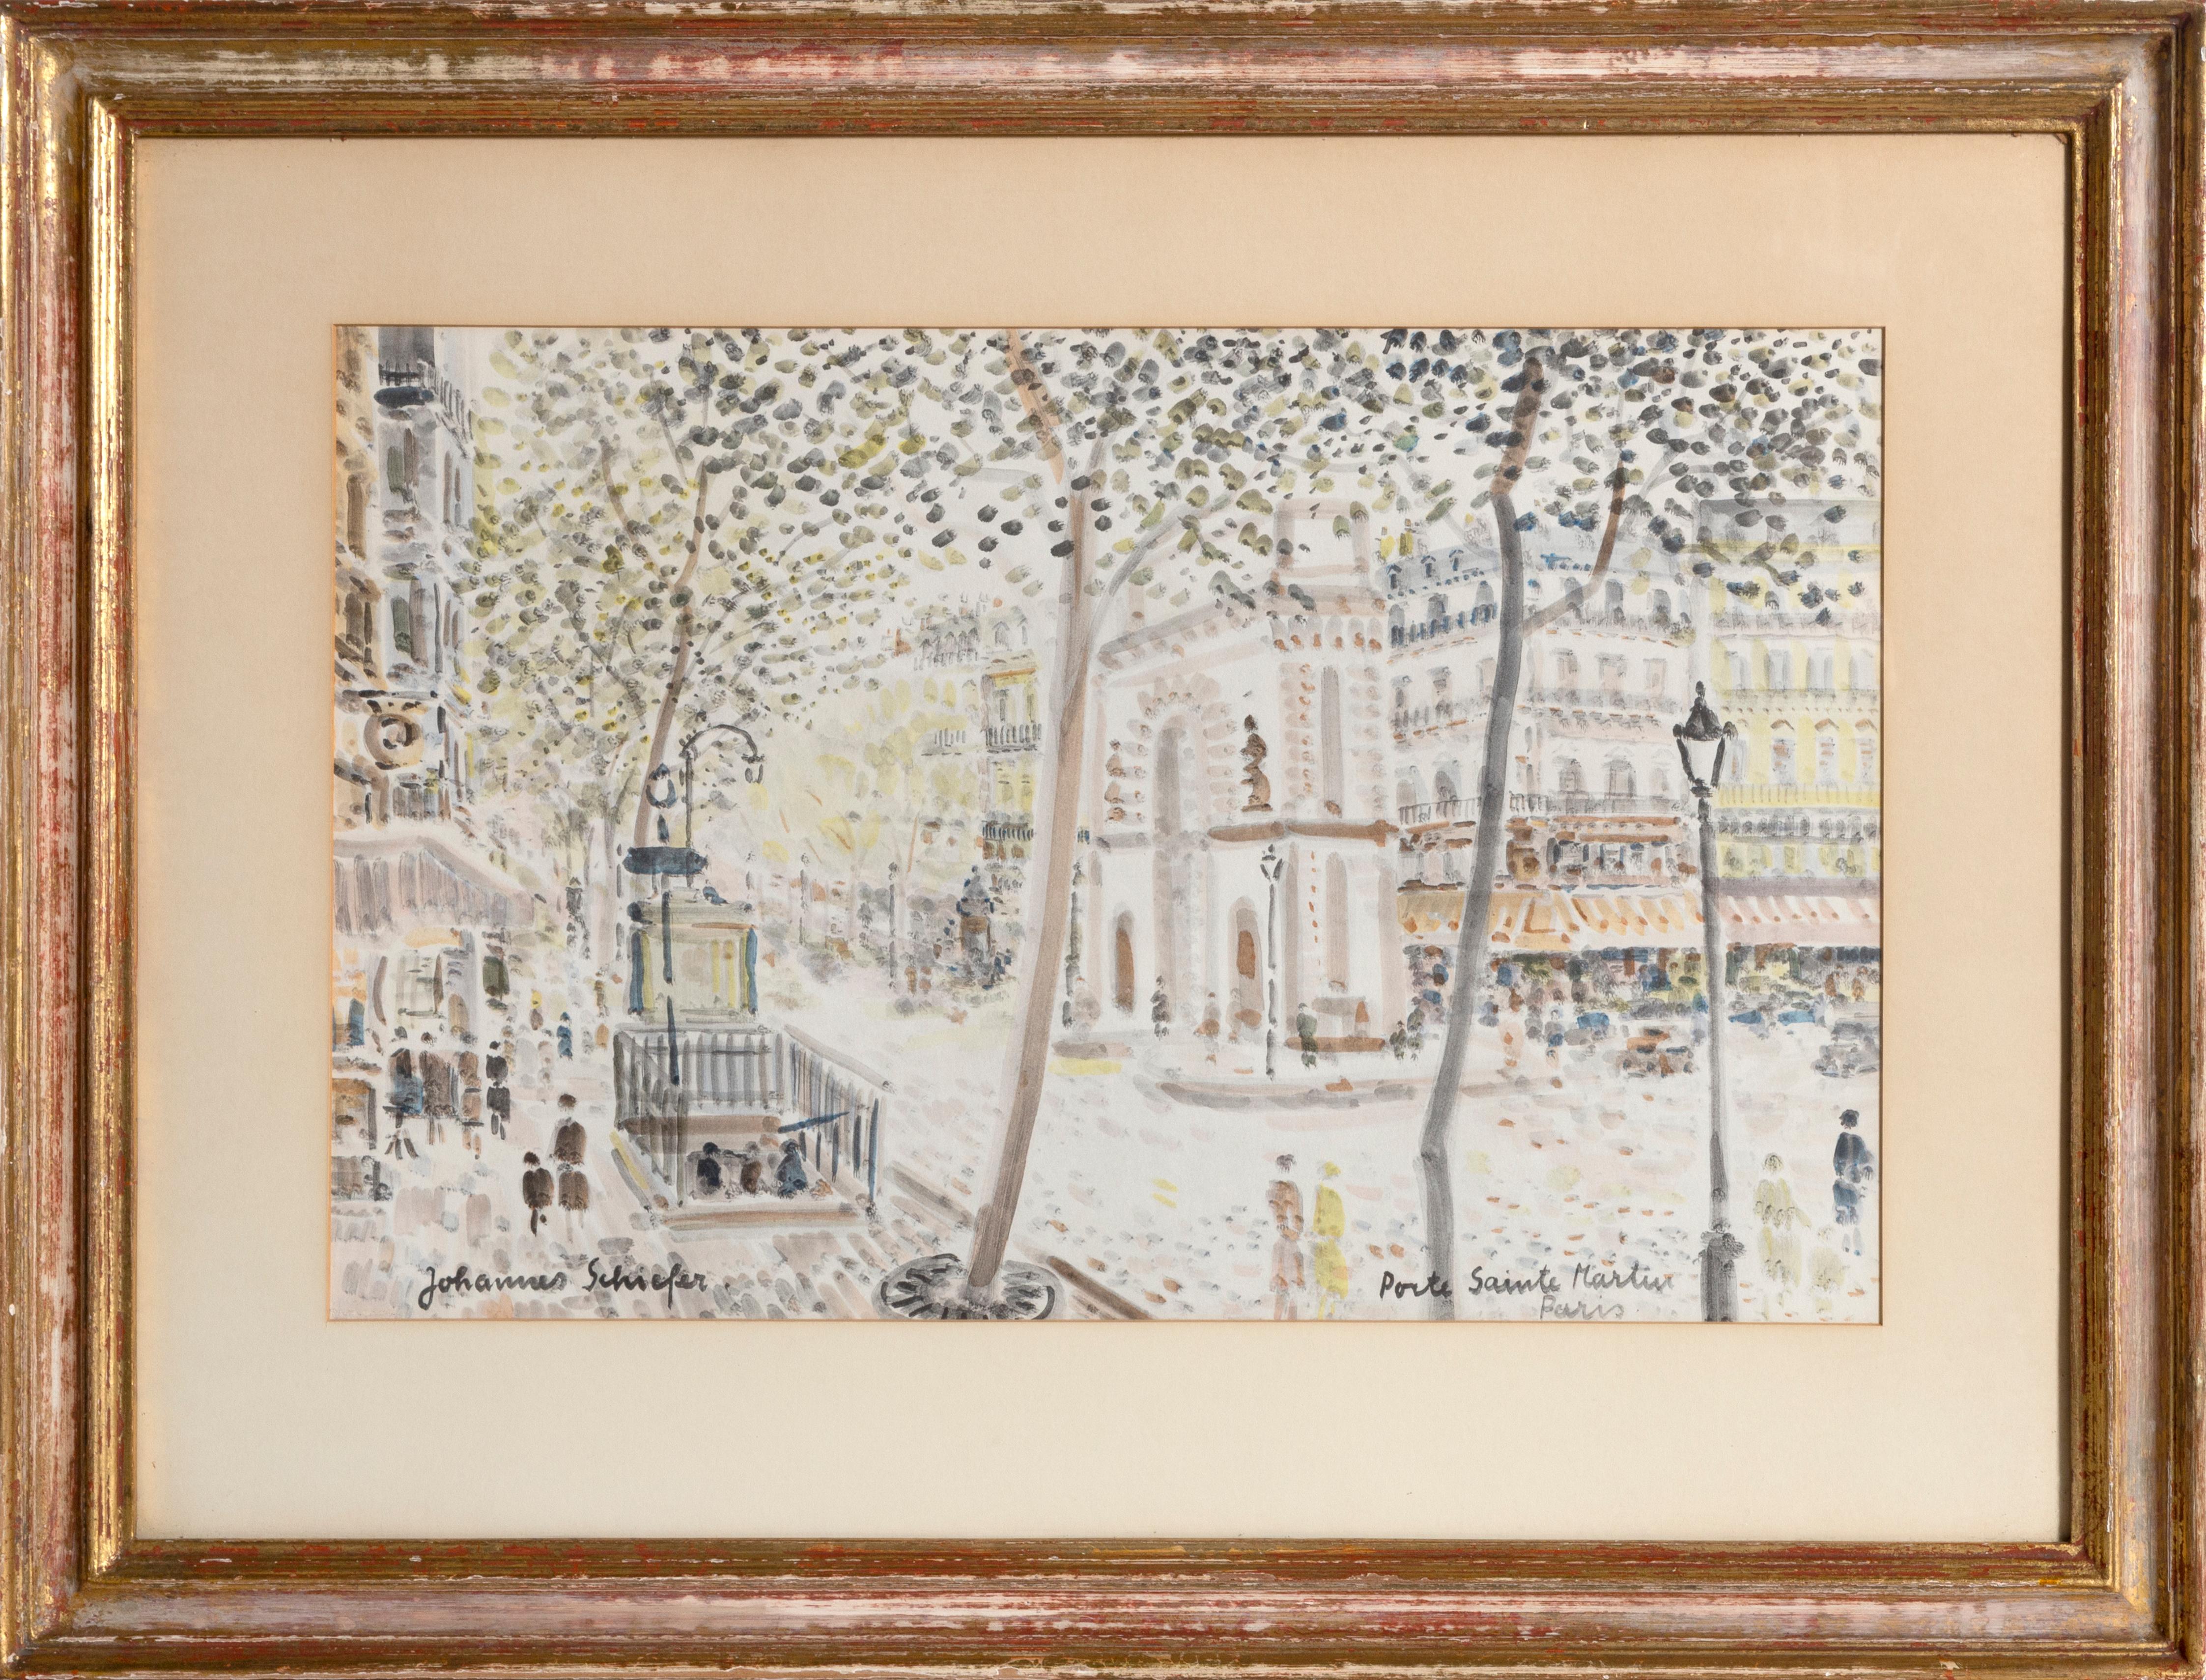 Künstler: Johannes Schiefer (1896 - 1979) 
Titel: Porte Sainte Martin:: Paris 
Jahr: ca. 1930 
Links unten rechts signiert und betitelt: Aquarell auf Papier 
Die Größe: 13 x 20::5 Zoll 
Rahmengröße: 22 x 29 Zoll